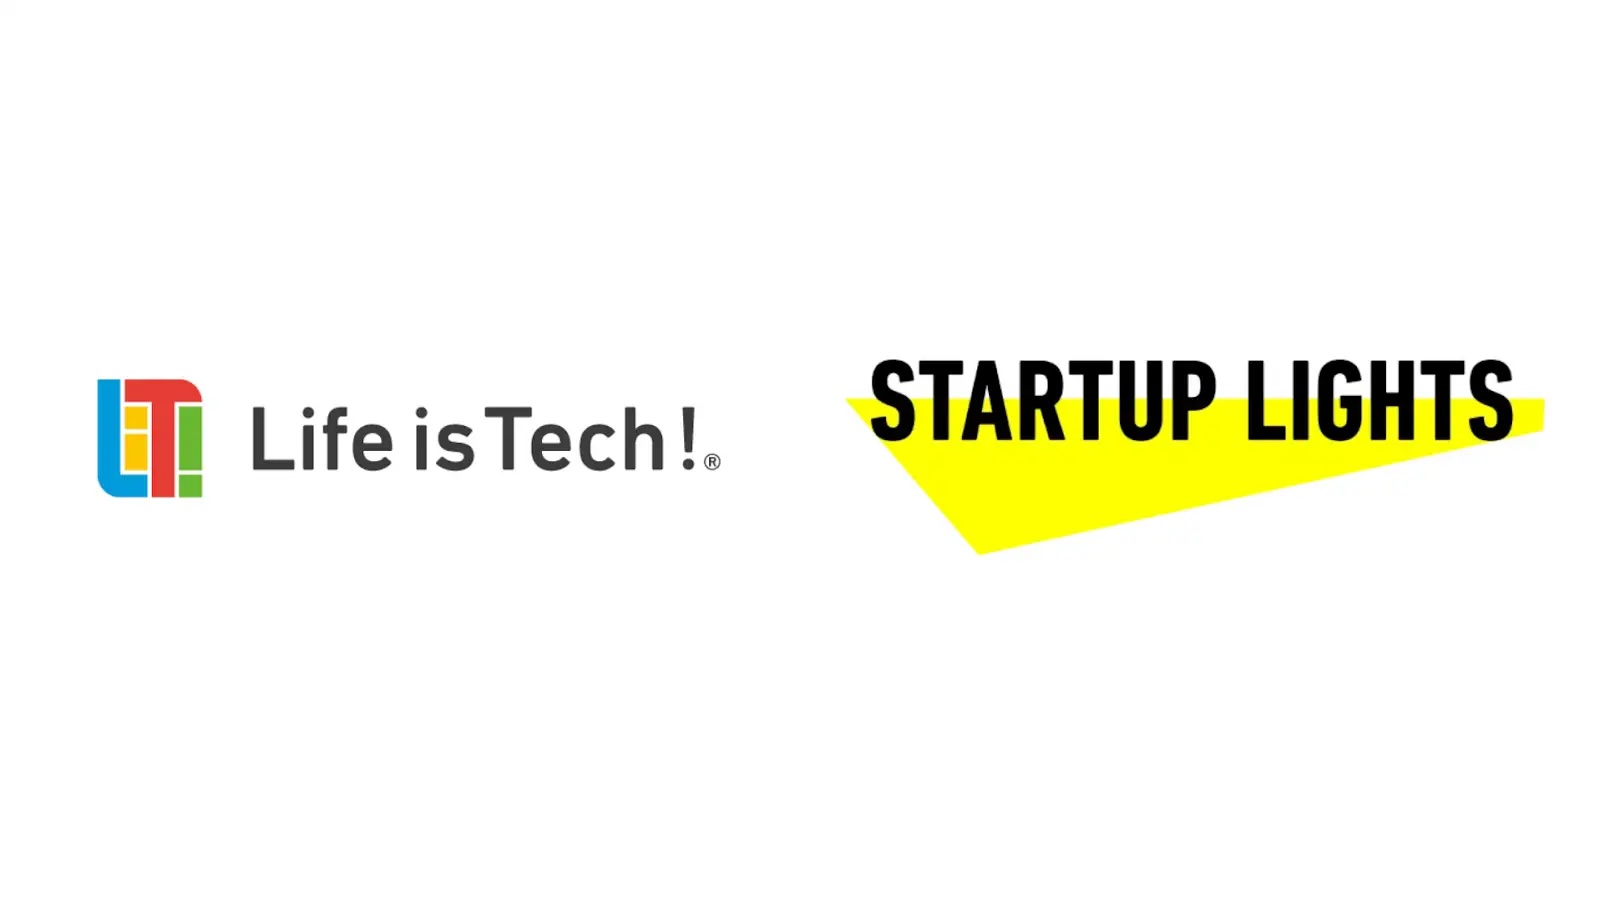 【プレスリリース】ライフイズテック、スタートアップのジェンダーギャップ解消を推進する「Startup Lights」認定第一弾企業に選出